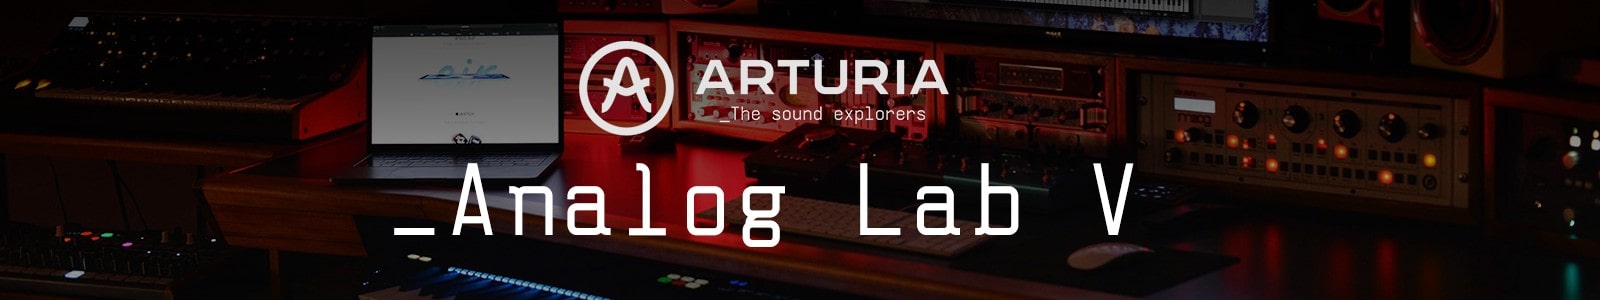 Analog Lab V by Arturia